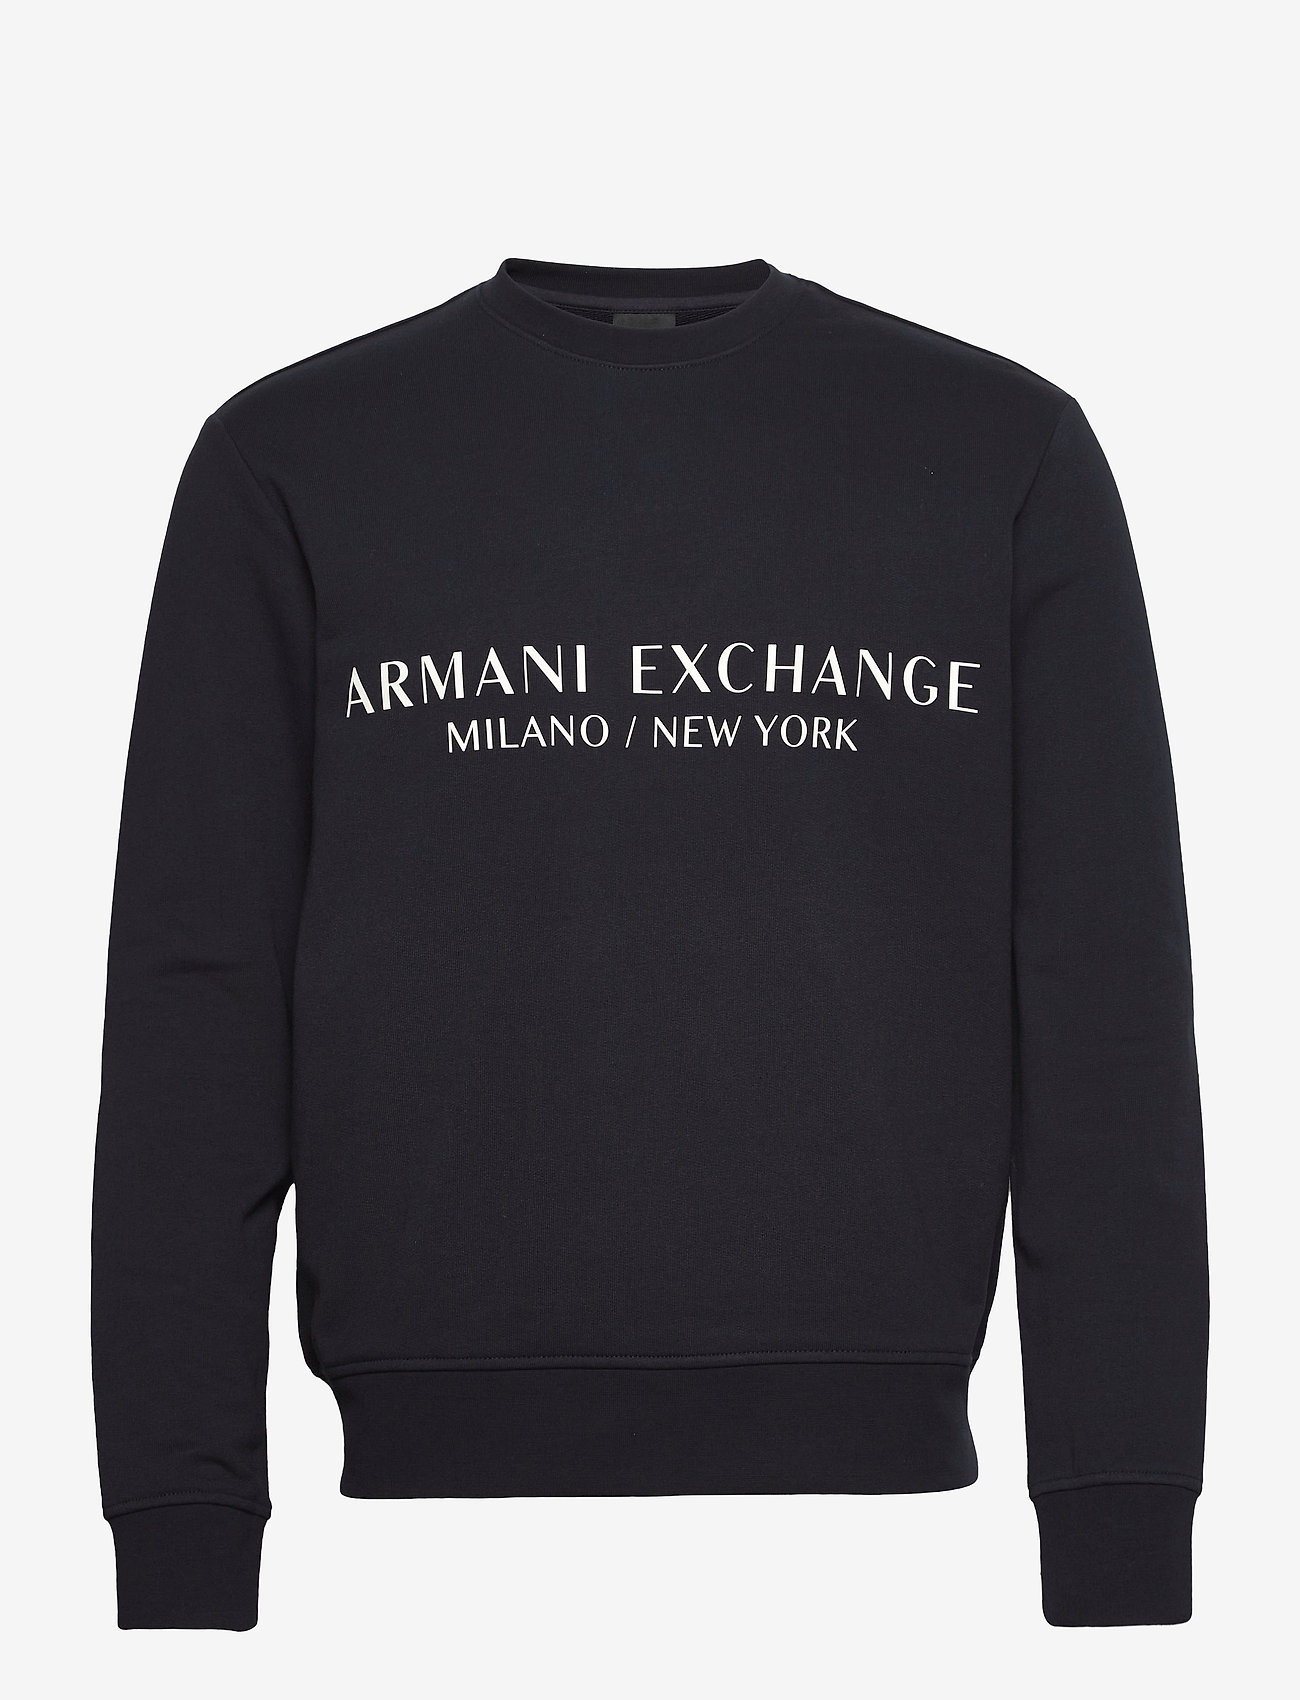 Armani Exchange - SWEATSHIRT - sweatshirts - navy - 0